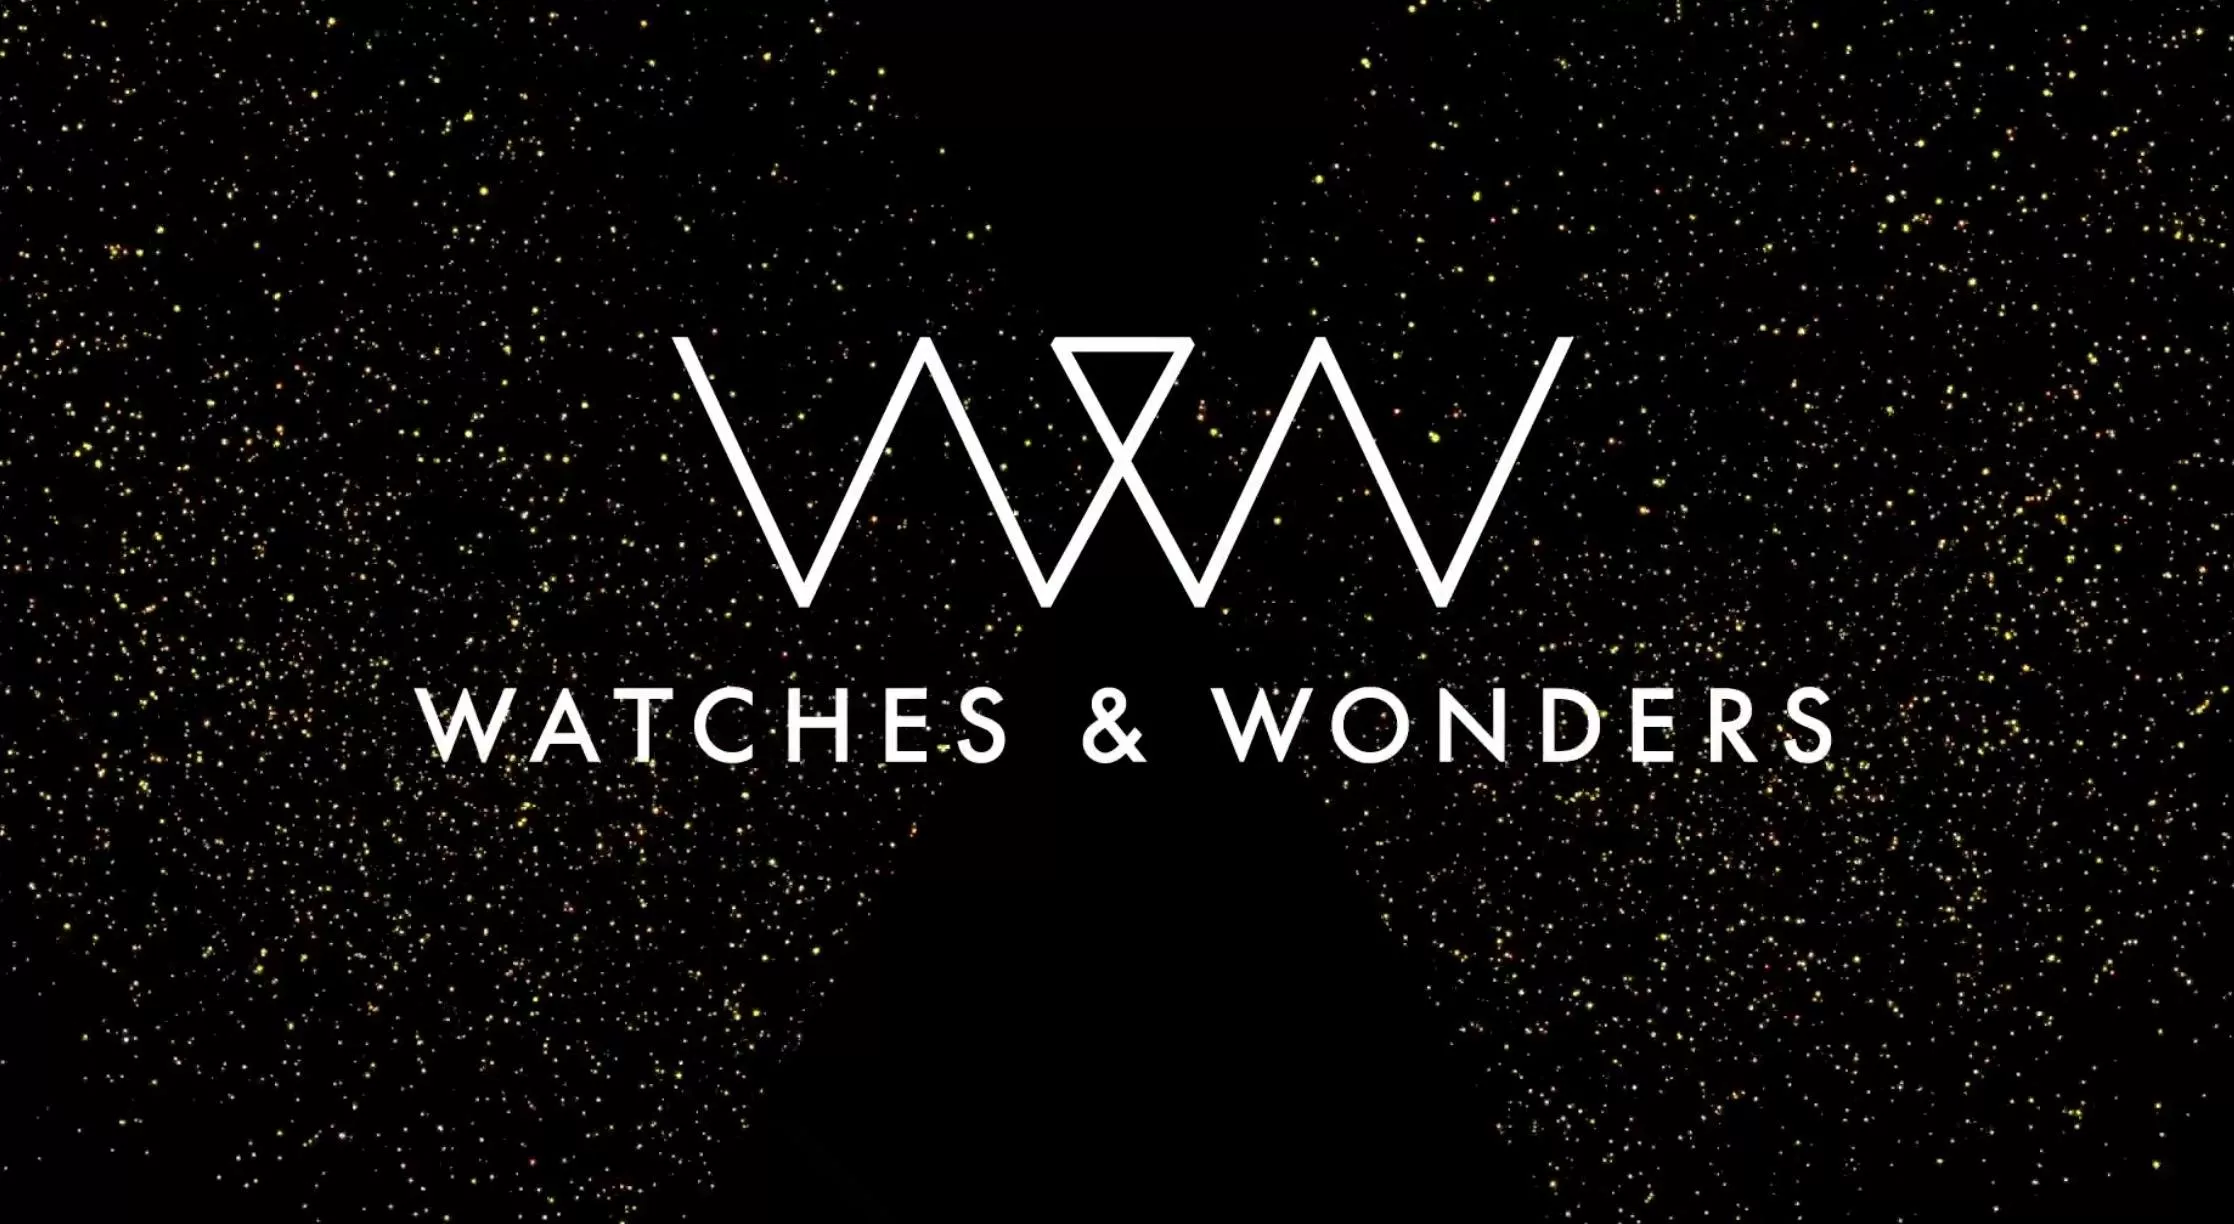 معرض Watches & Wonders 2020 يضم أبرز الماركات العالمية